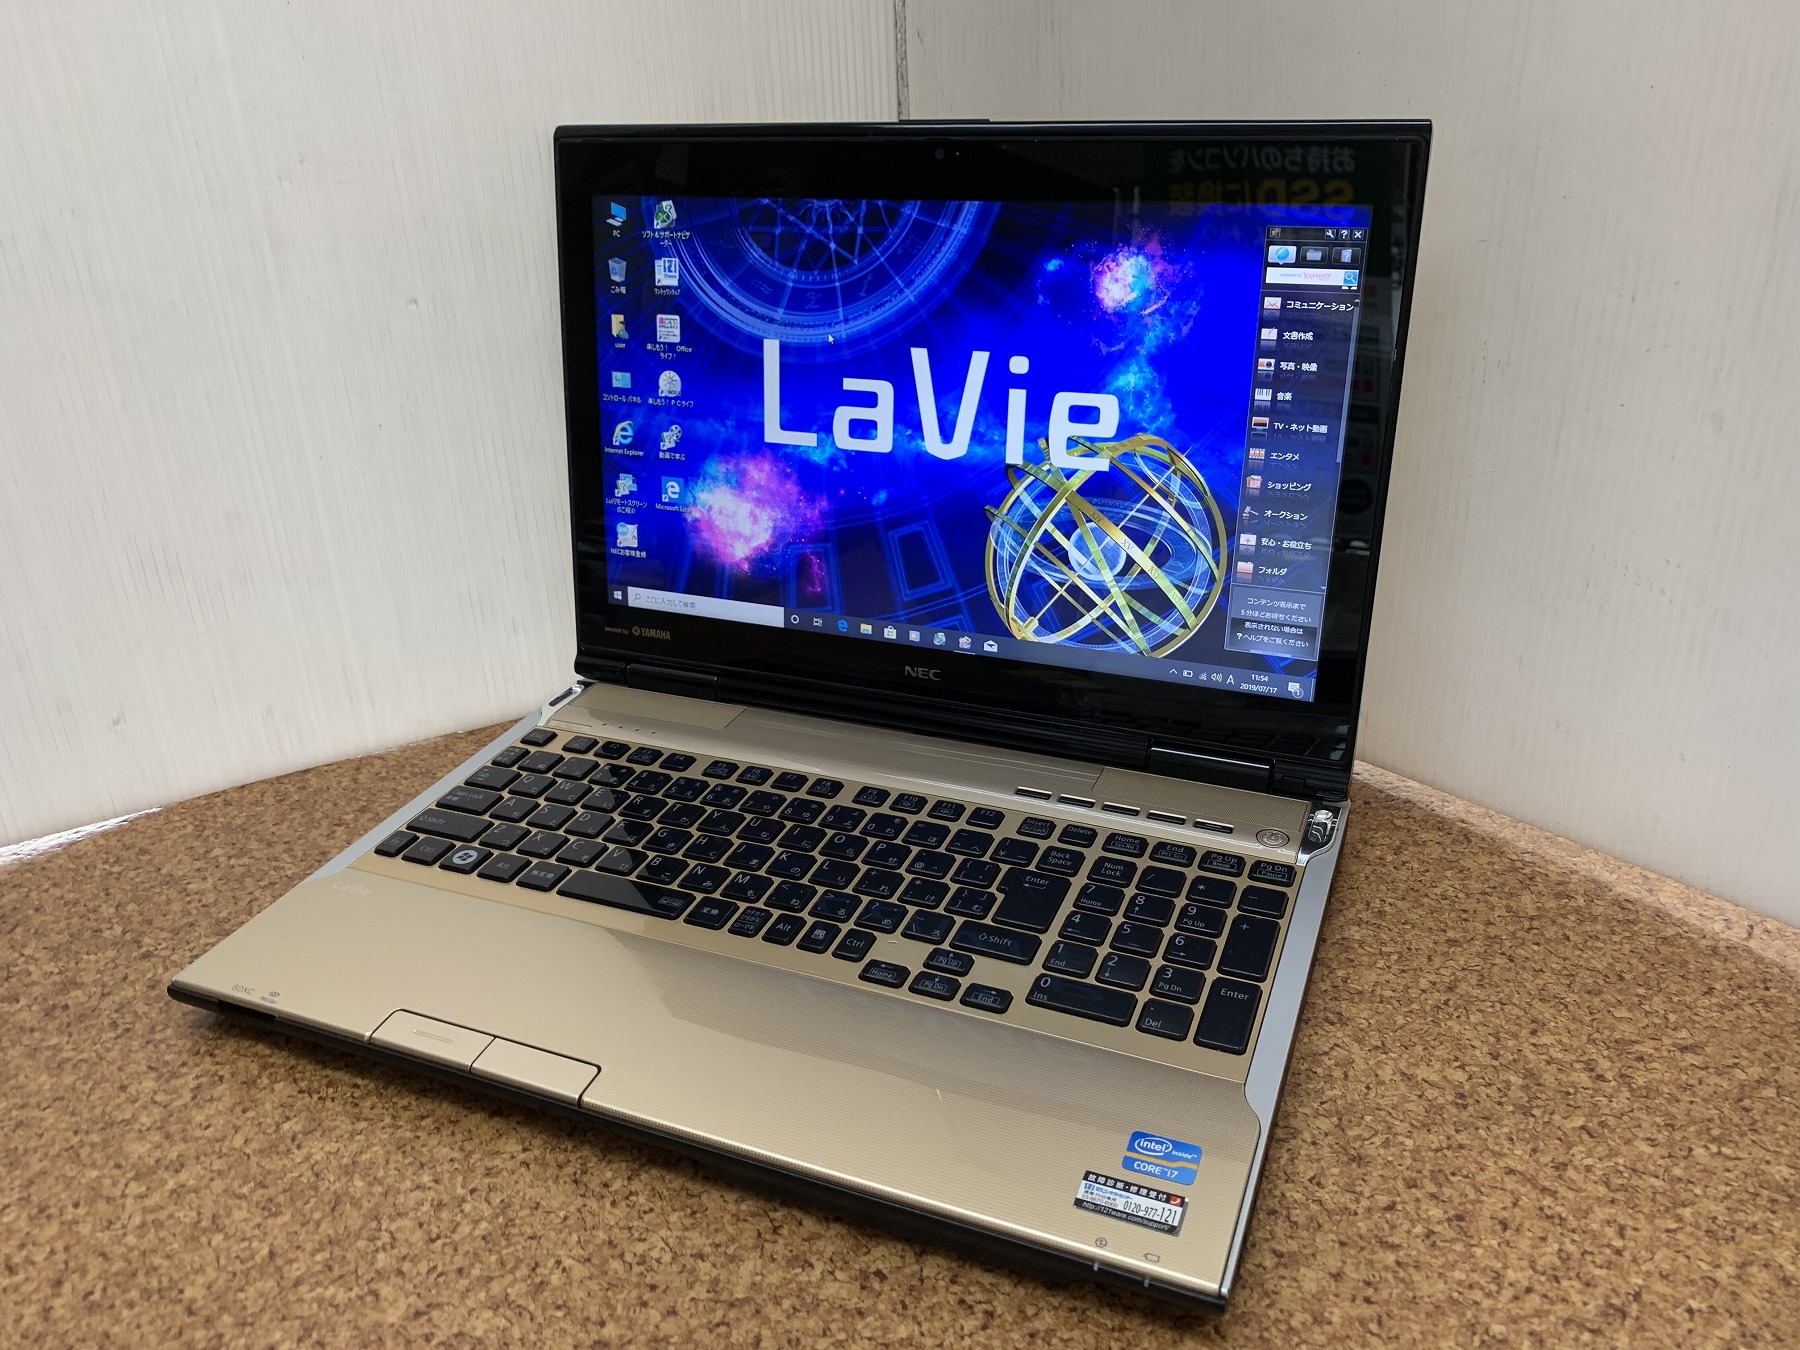 【ジャンク品】NEC ノートパソコン LaVie LL750/H